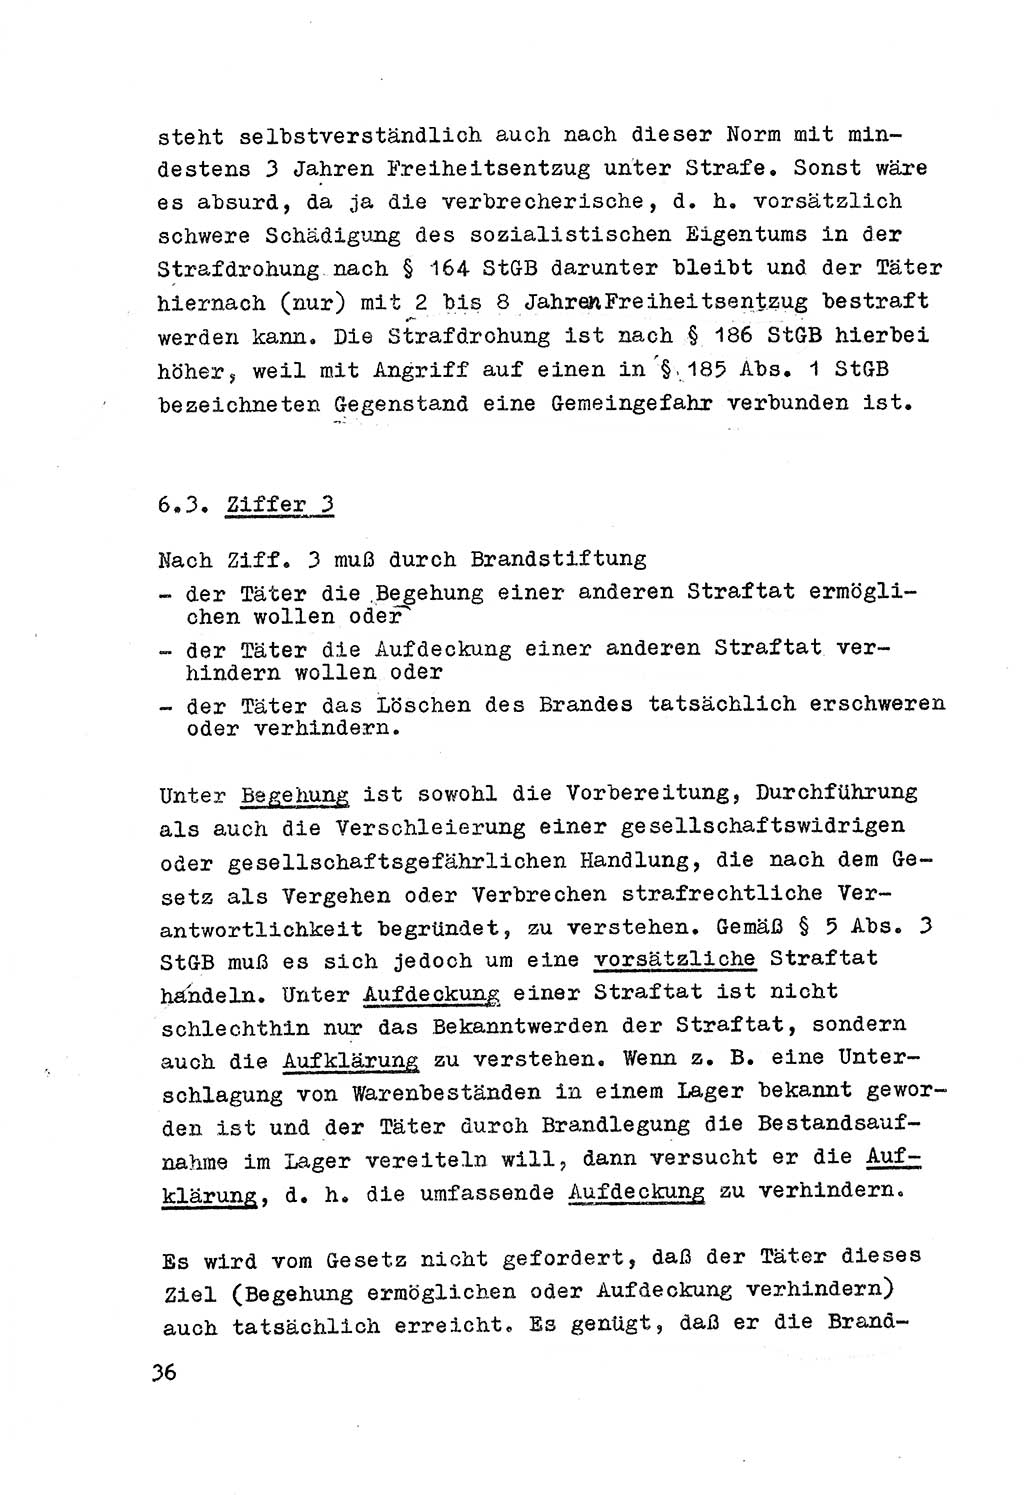 Strafrecht der DDR (Deutsche Demokratische Republik), Besonderer Teil, Lehrmaterial, Heft 7 1970, Seite 36 (Strafr. DDR BT Lehrmat. H. 7 1970, S. 36)